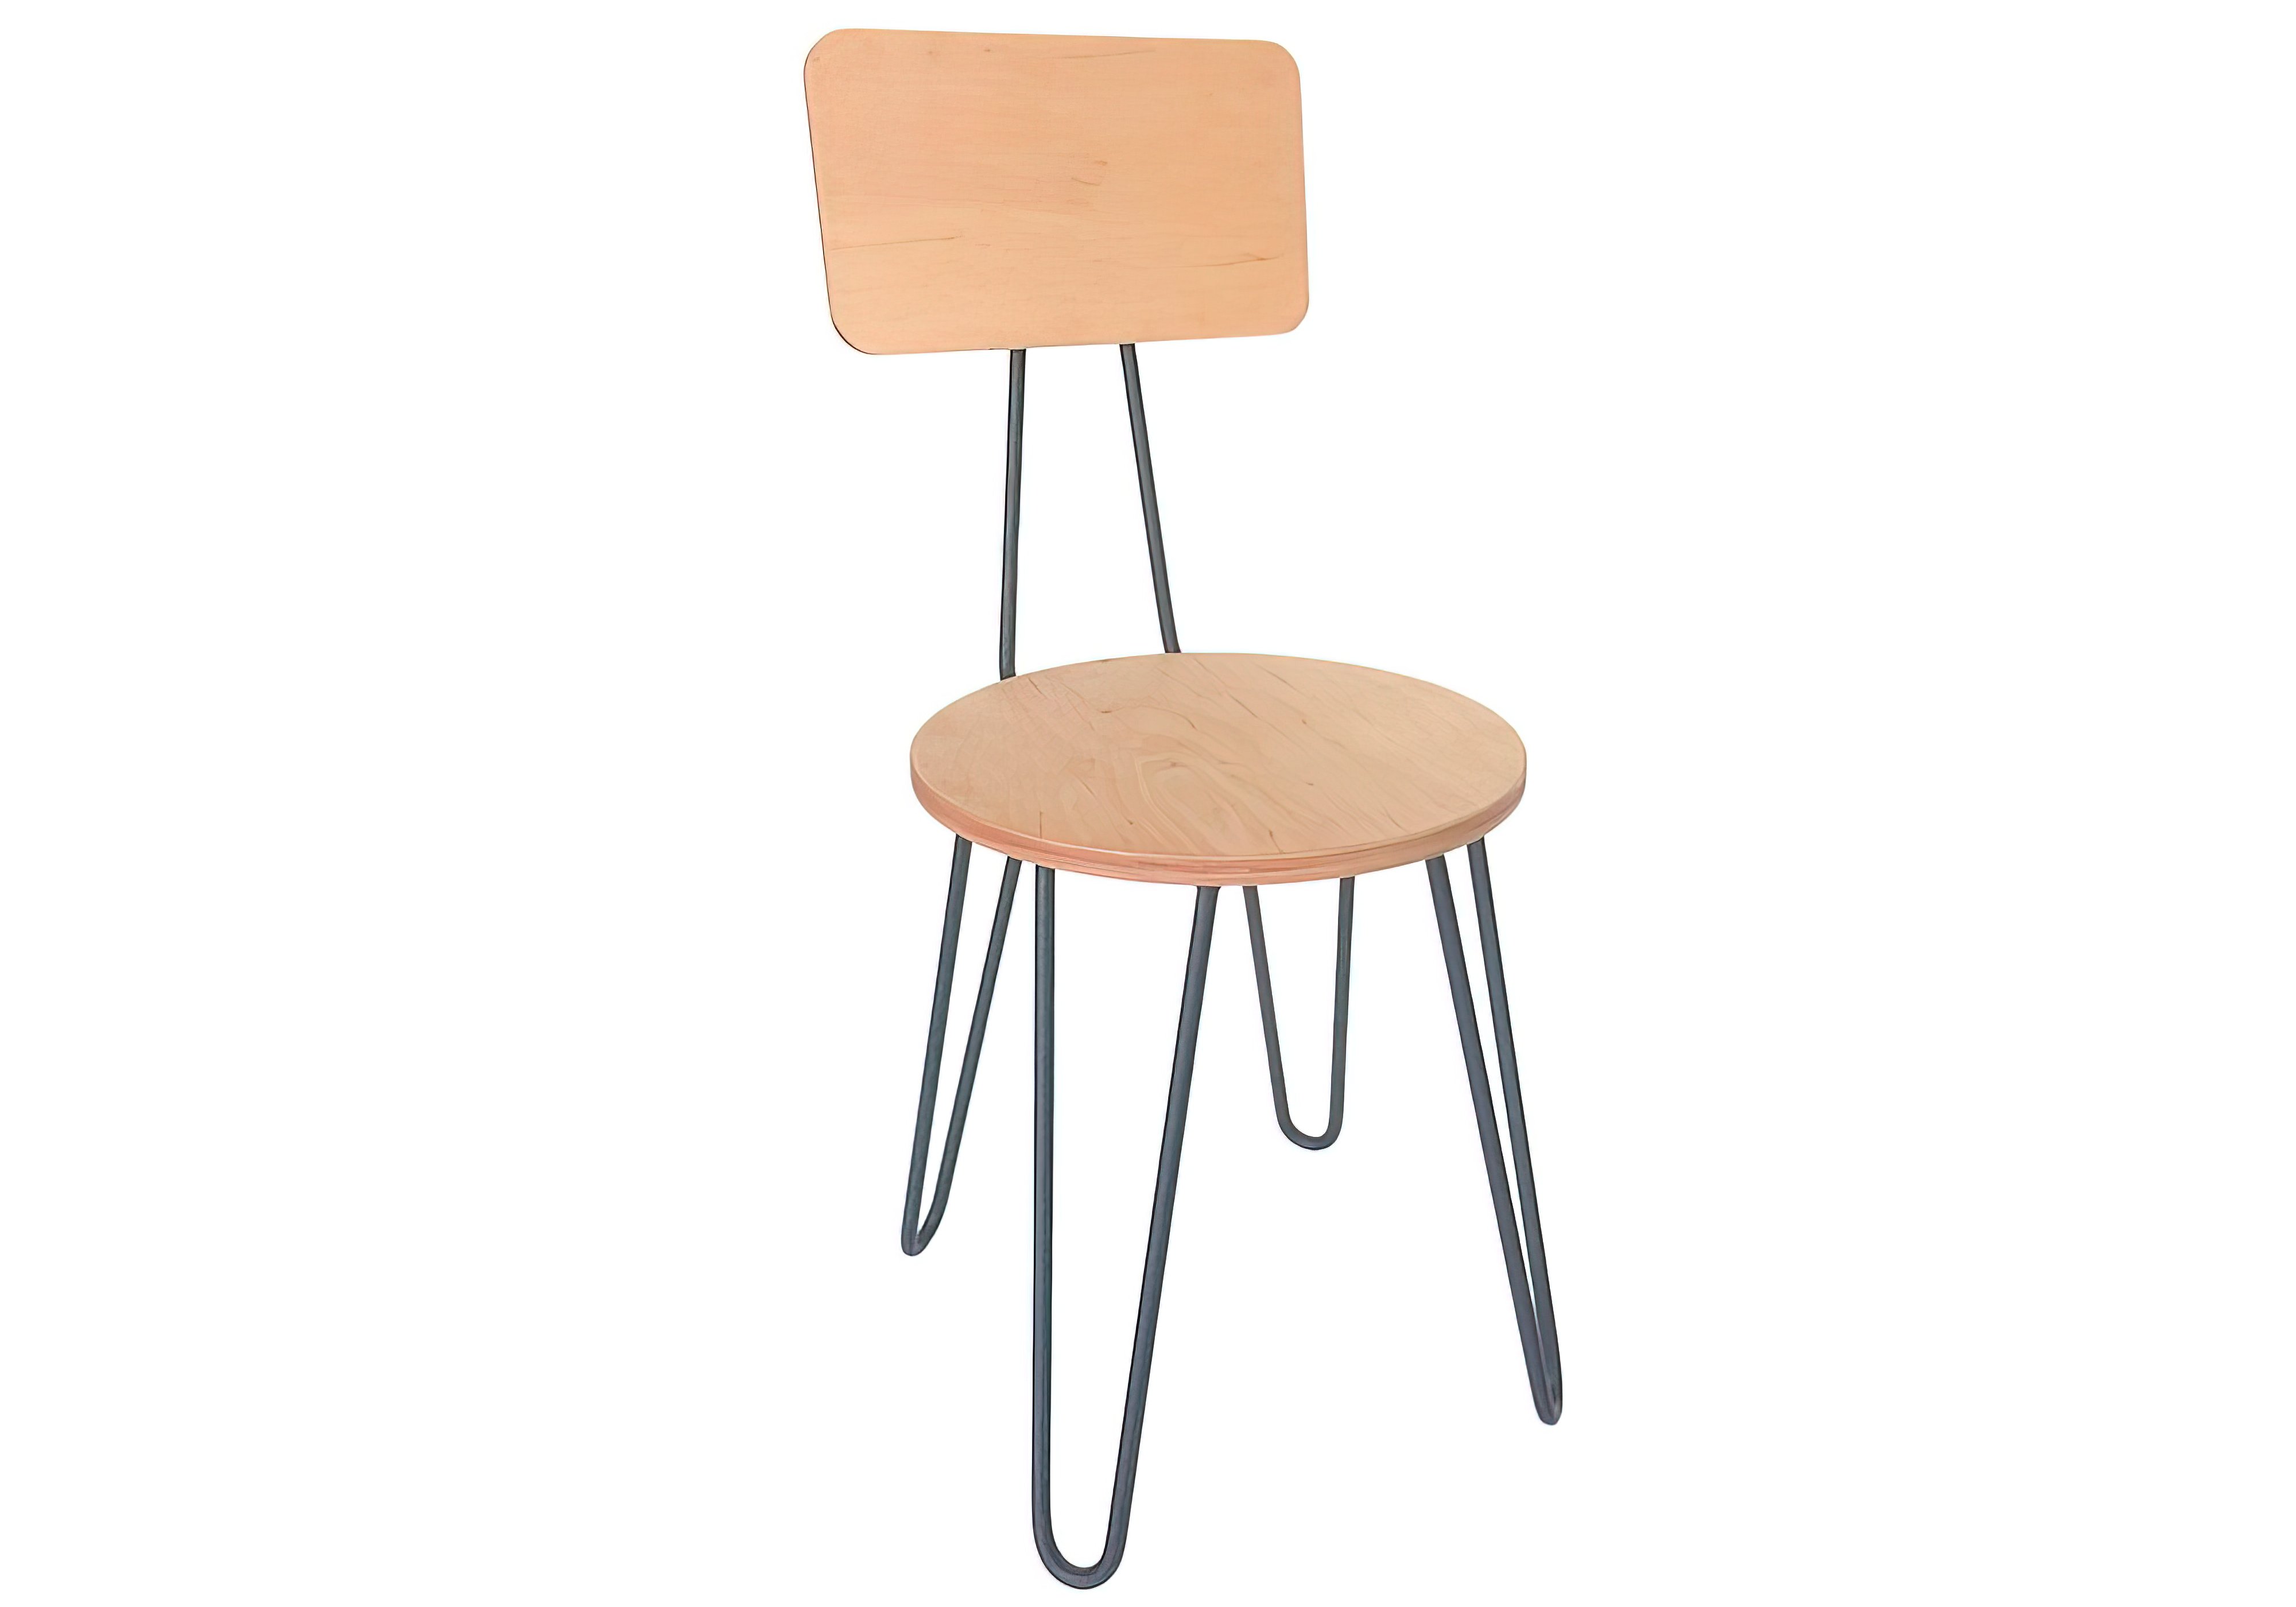 Кухонный стул Fusion Hairpinlegs, Тип Обеденный, Высота 87см, Ширина сиденья 32см